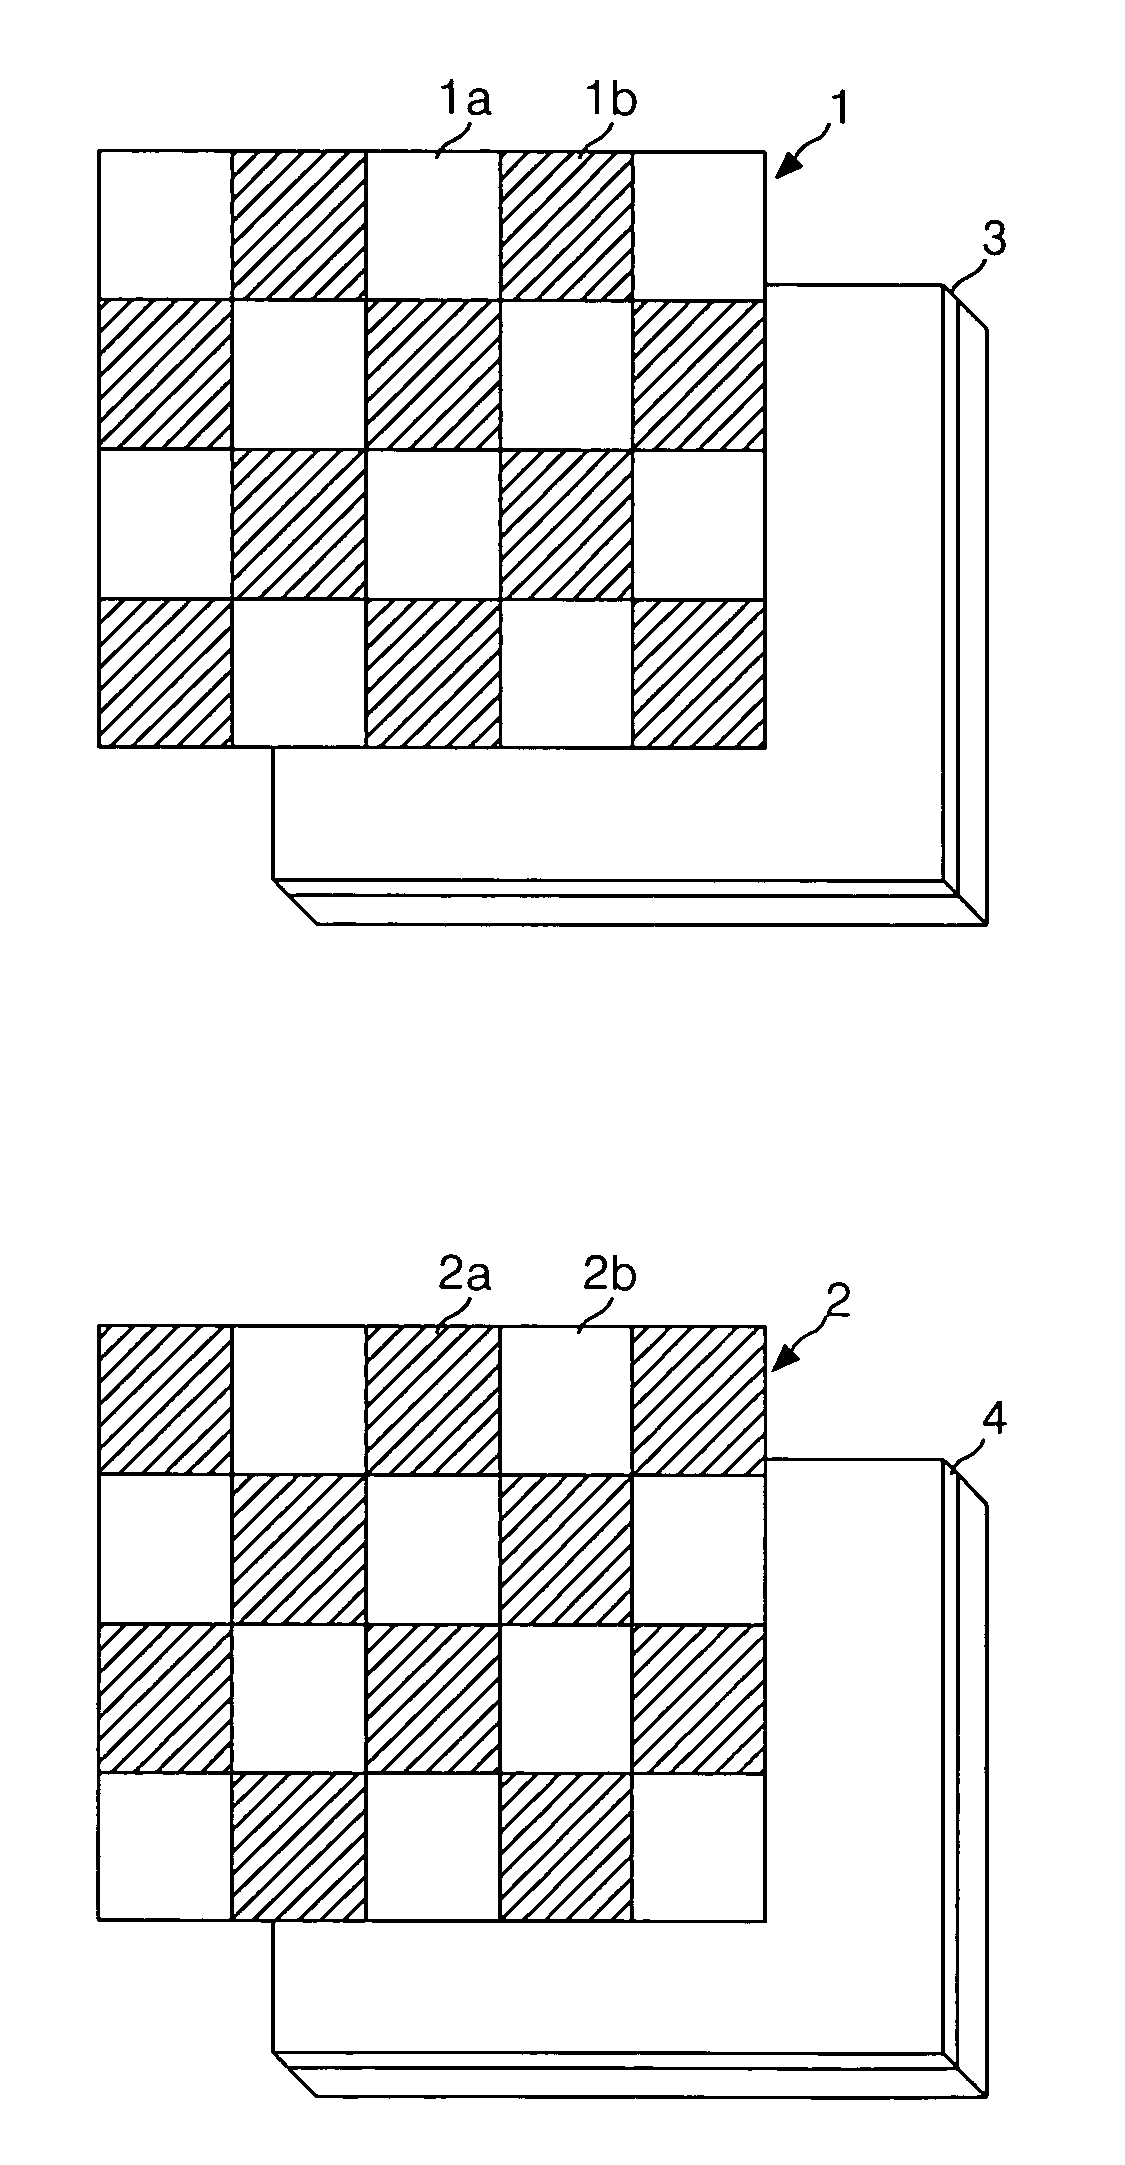 Aligning method of ferroelectric liquid crystal display and ferroelectric liquid crystal display apparatus using the same